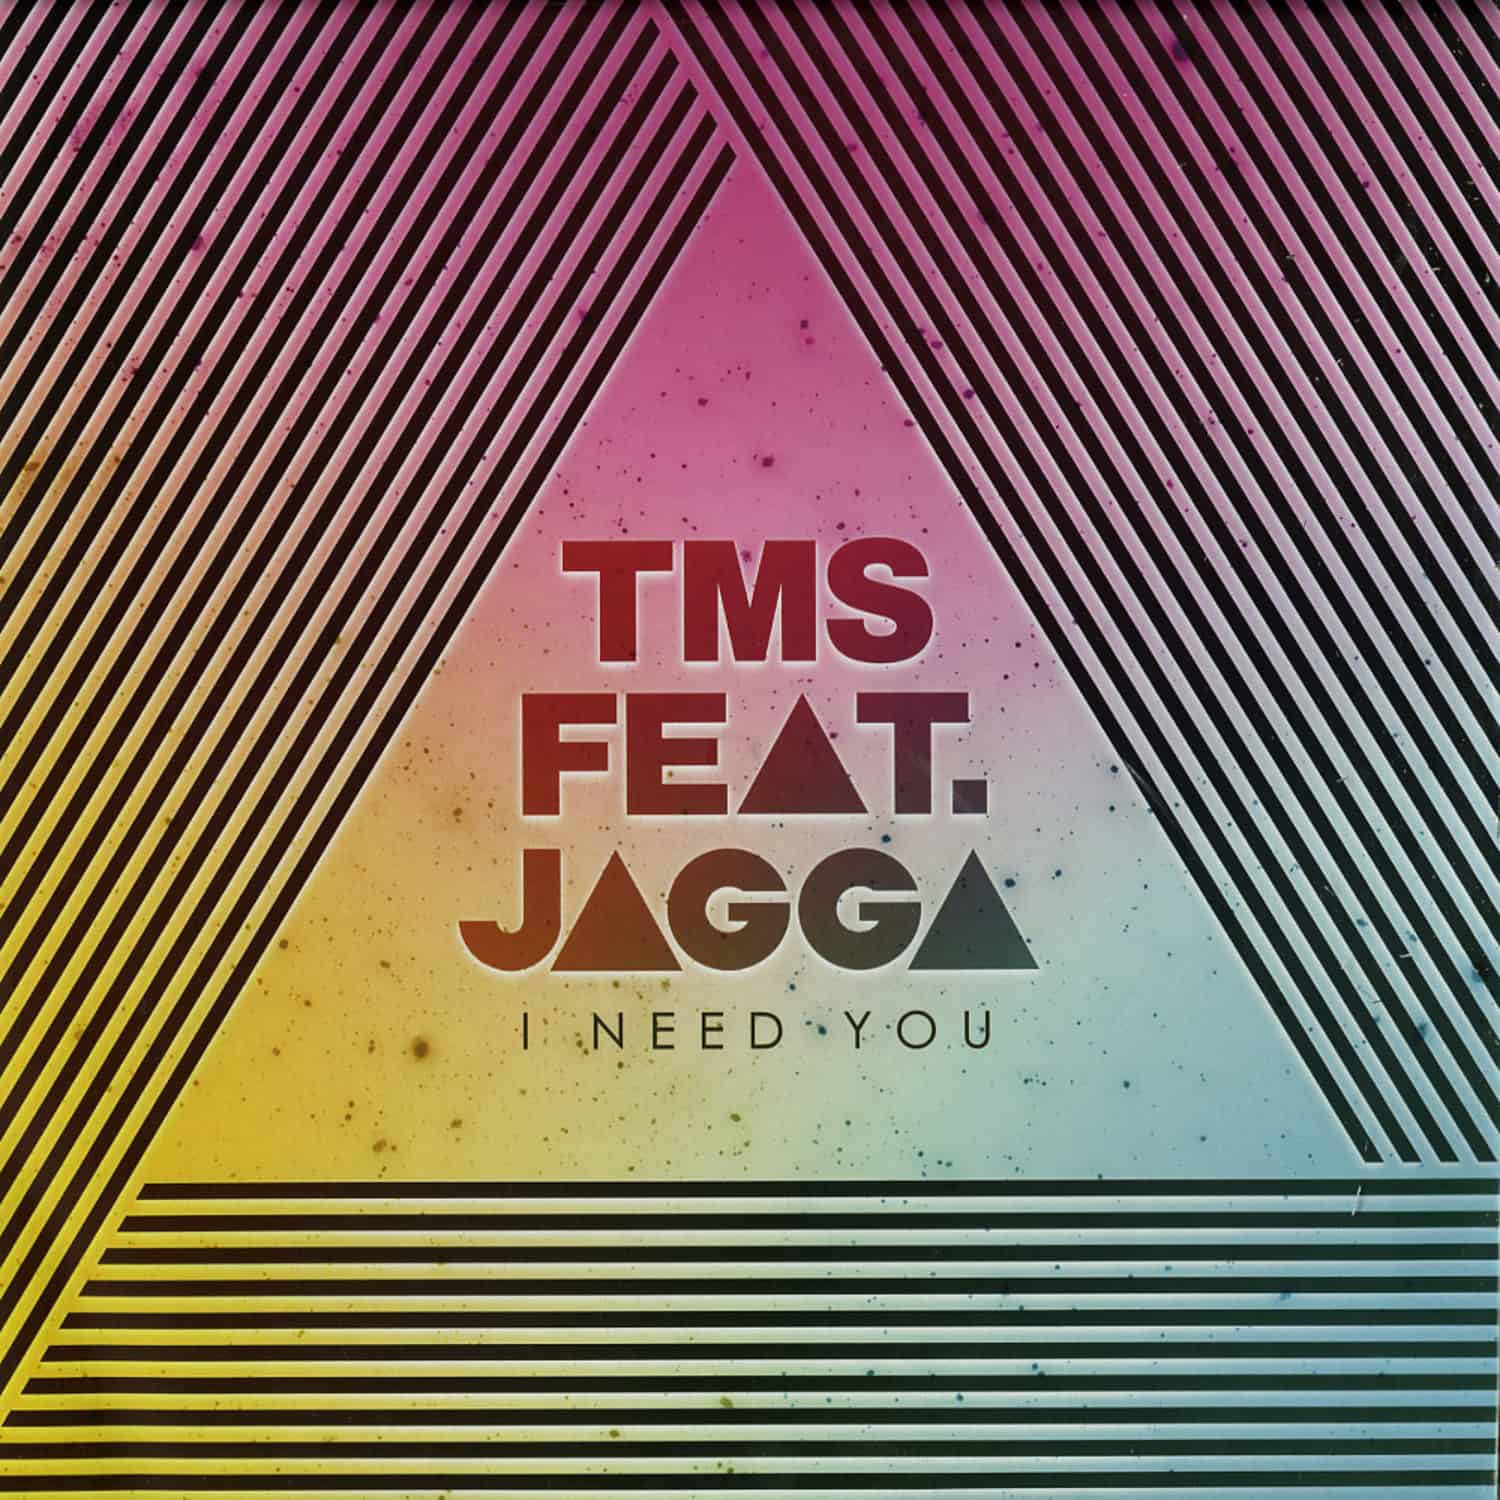 TMS ft. Jagga - I NEED YOU 